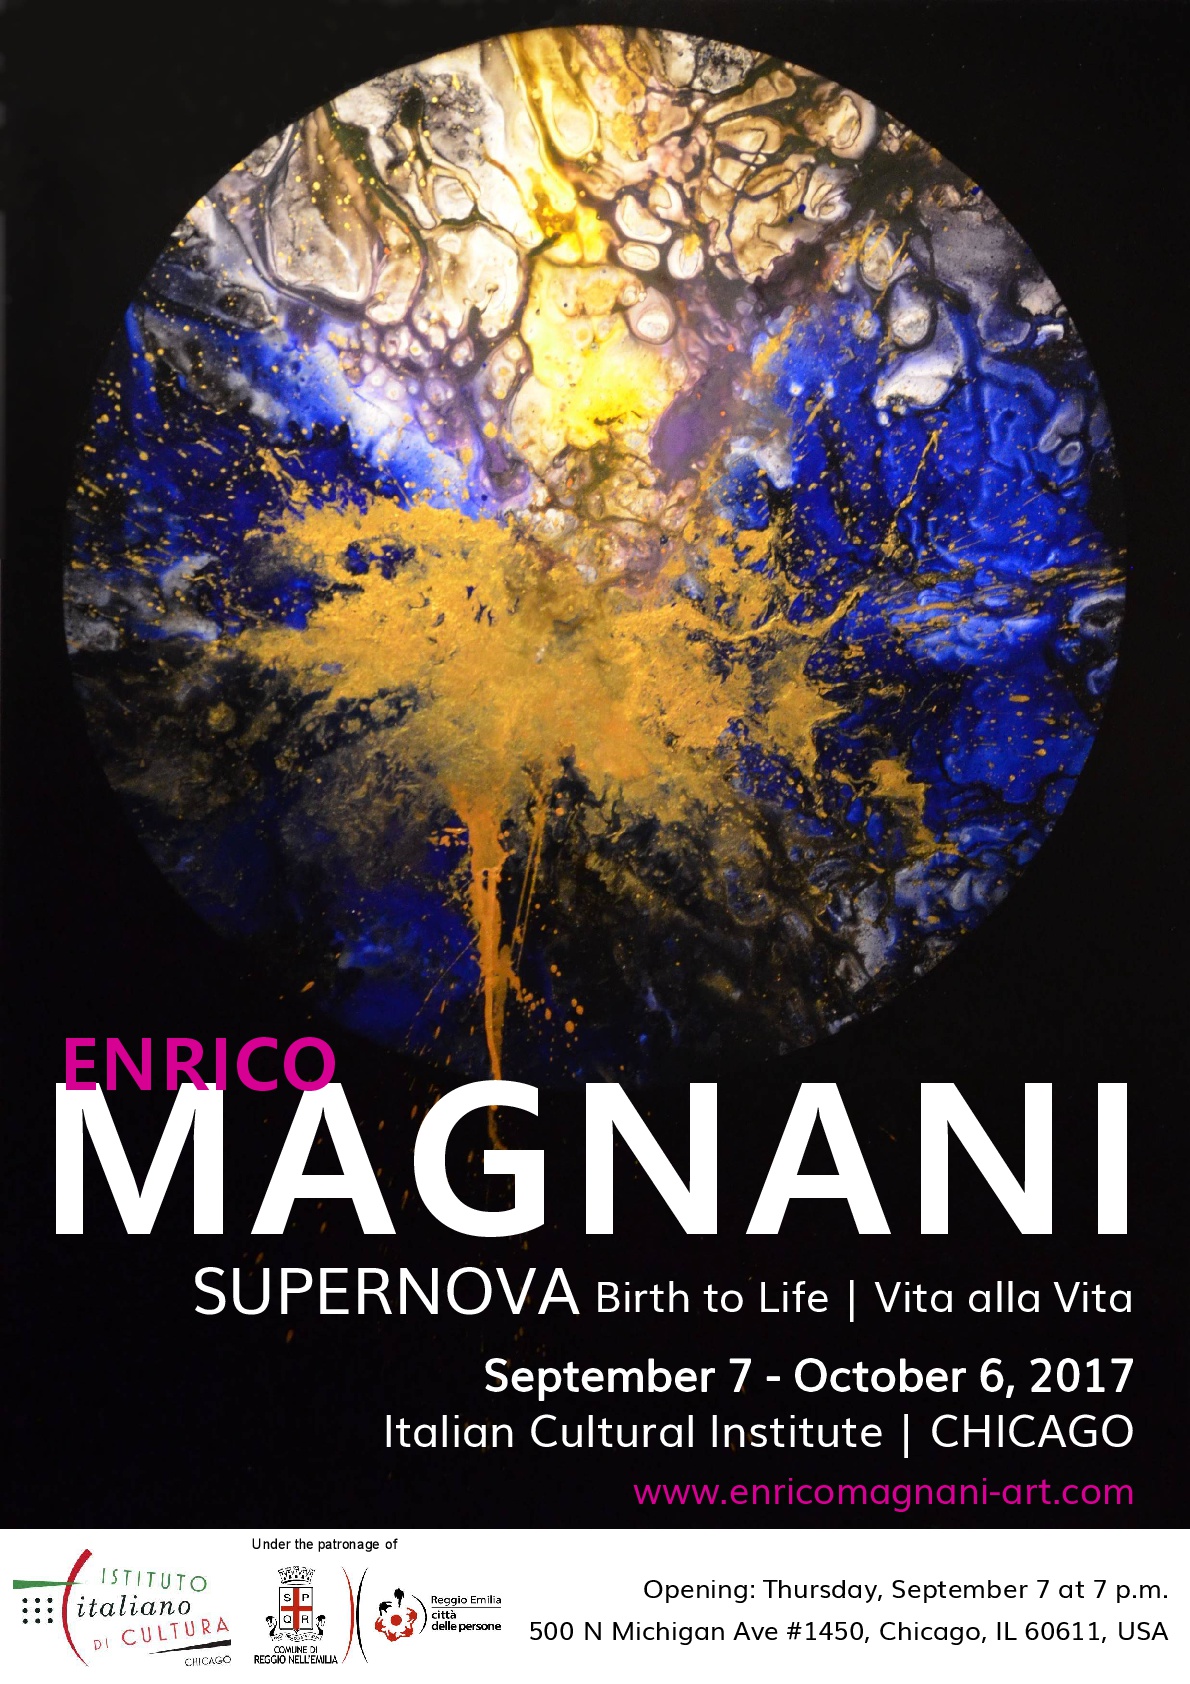 Enrico magnani, chicago, iic, istituto, italiano, cultura, supernova, birth, life, vita